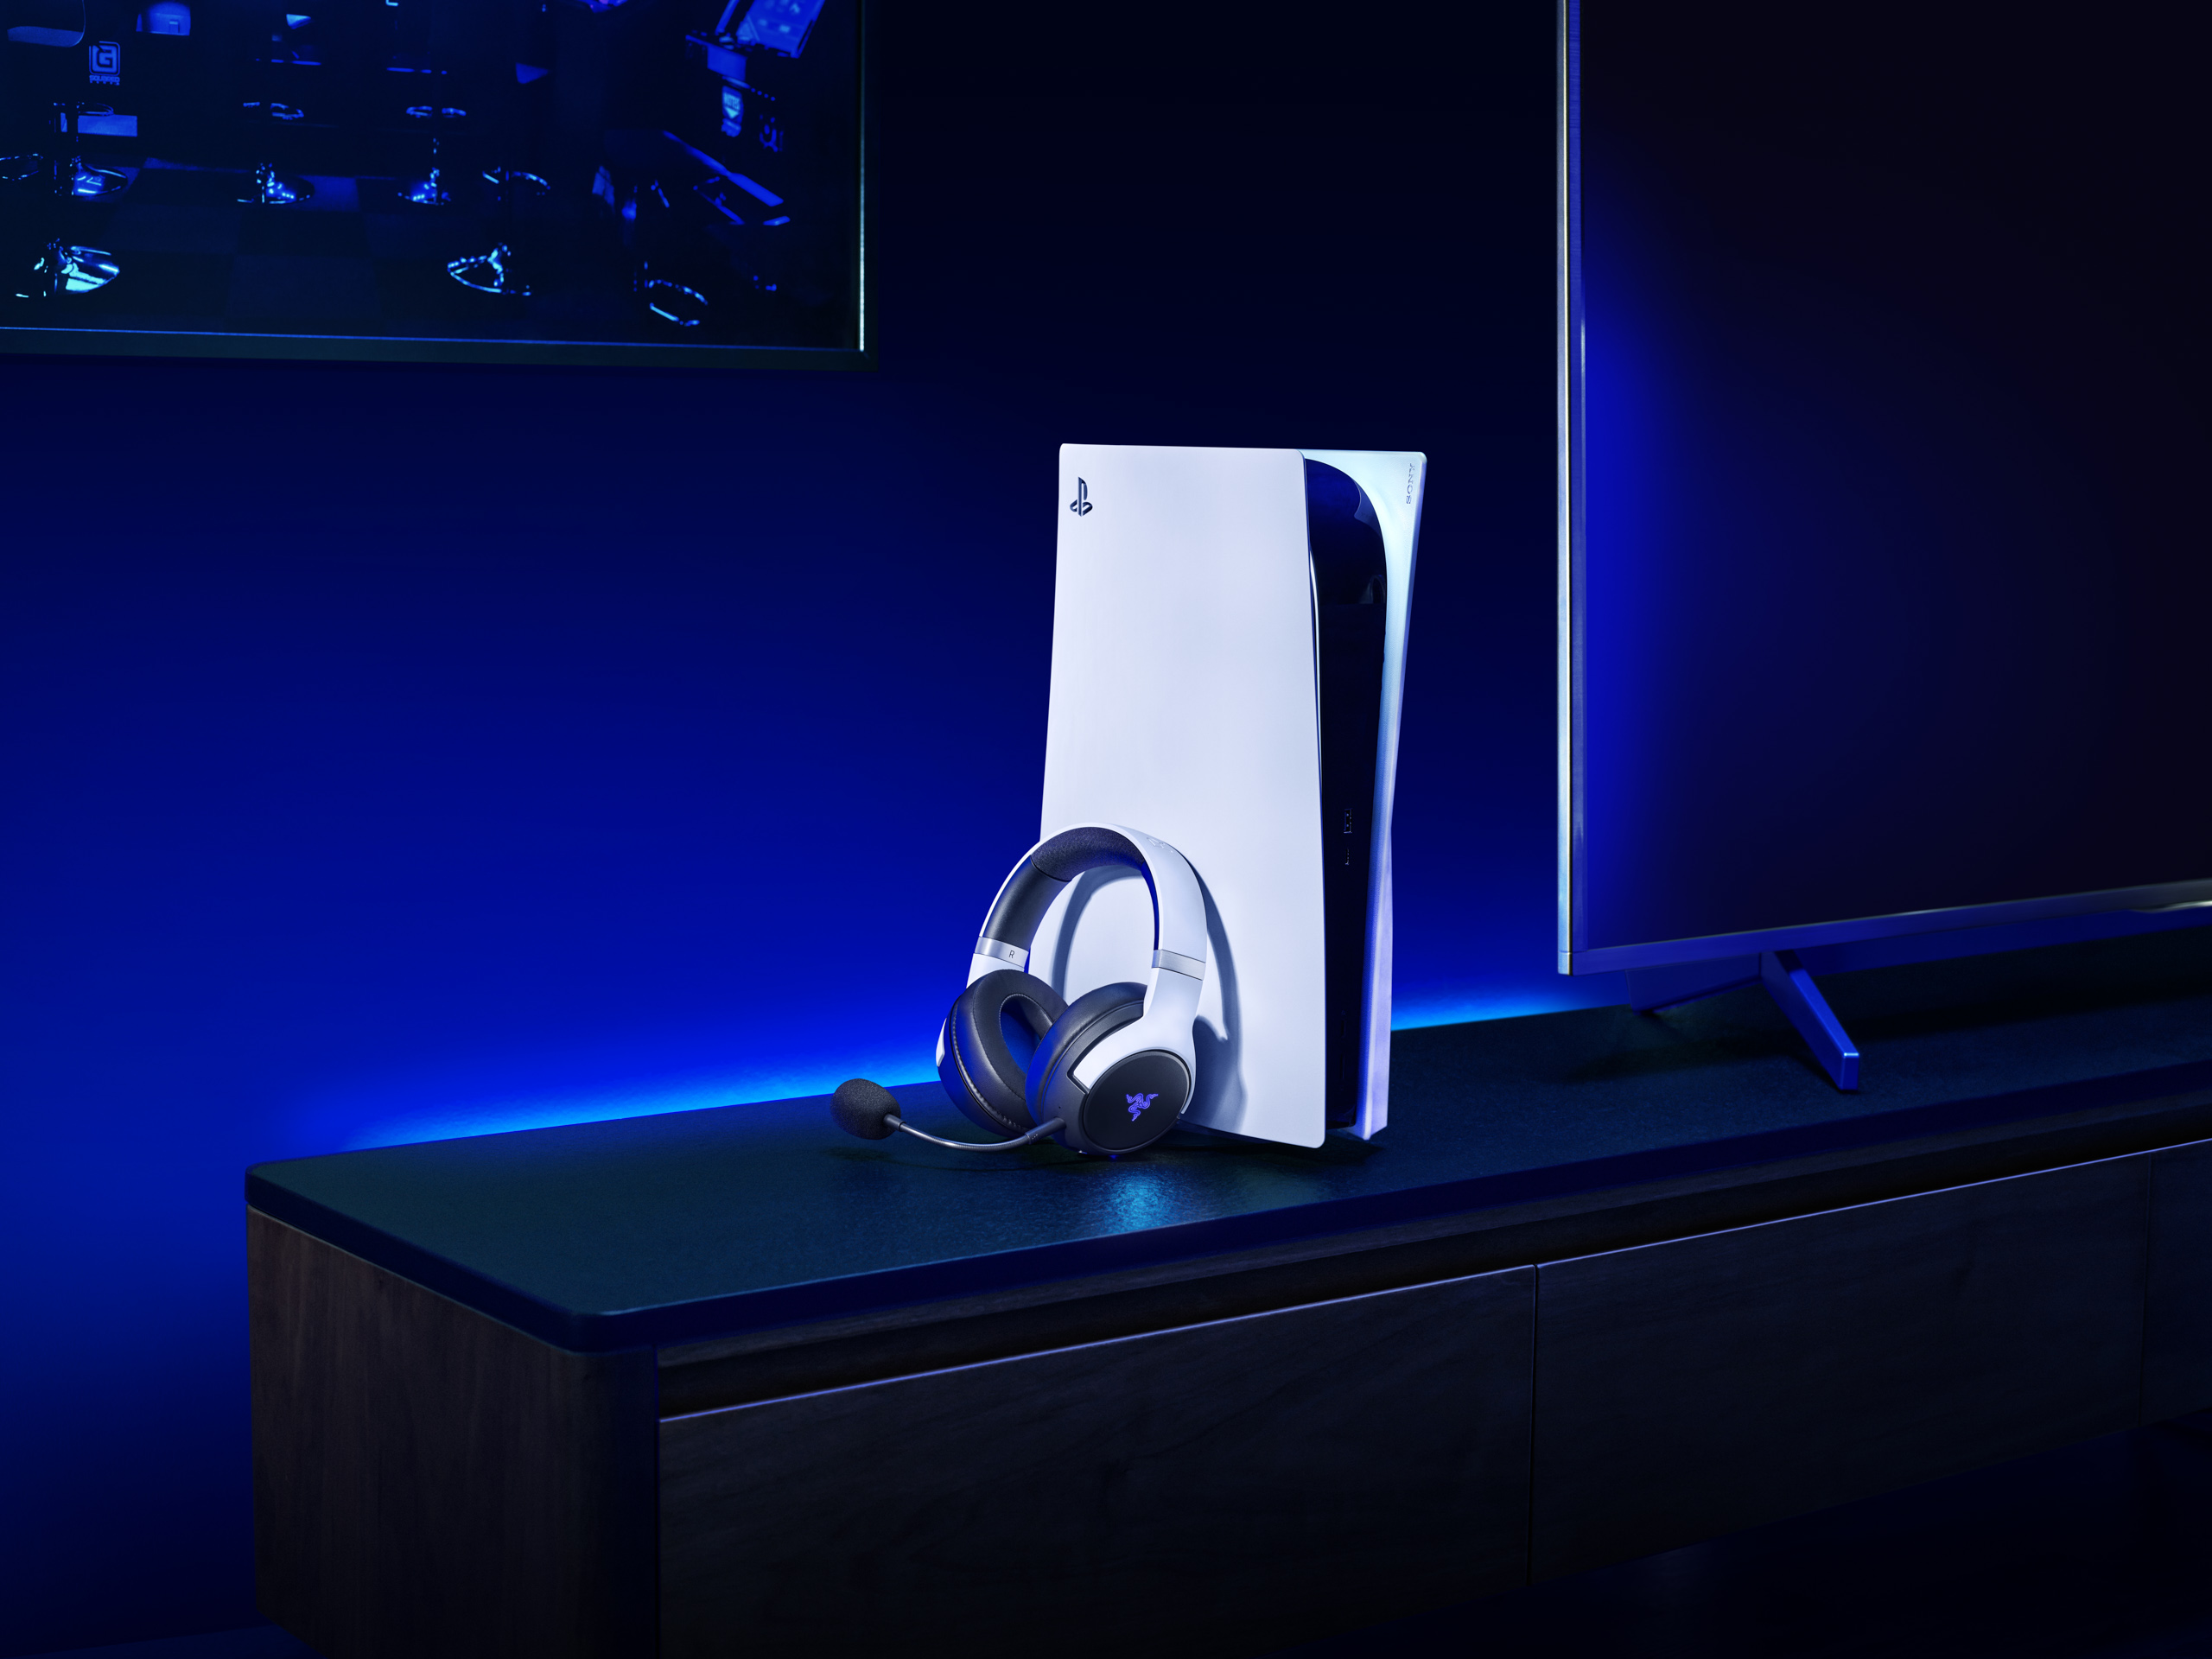 Razer mở rộng đế chế PS5 với dòng sản phẩm tai nghe Kaira Pro và Kaira